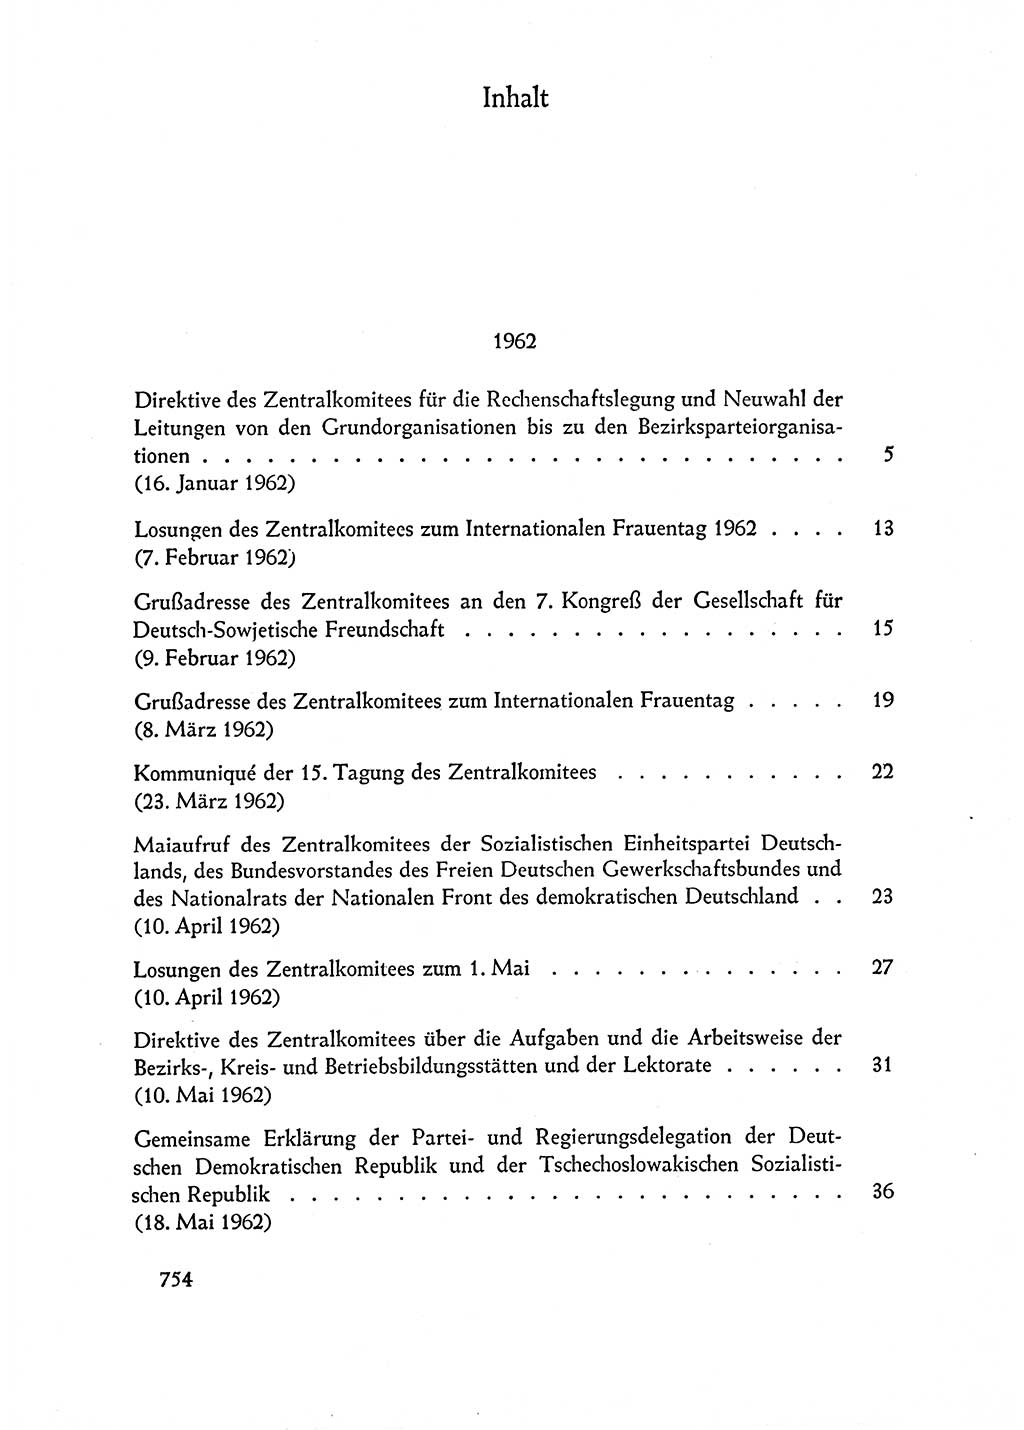 Dokumente der Sozialistischen Einheitspartei Deutschlands (SED) [Deutsche Demokratische Republik (DDR)] 1962-1963, Seite 754 (Dok. SED DDR 1962-1963, S. 754)